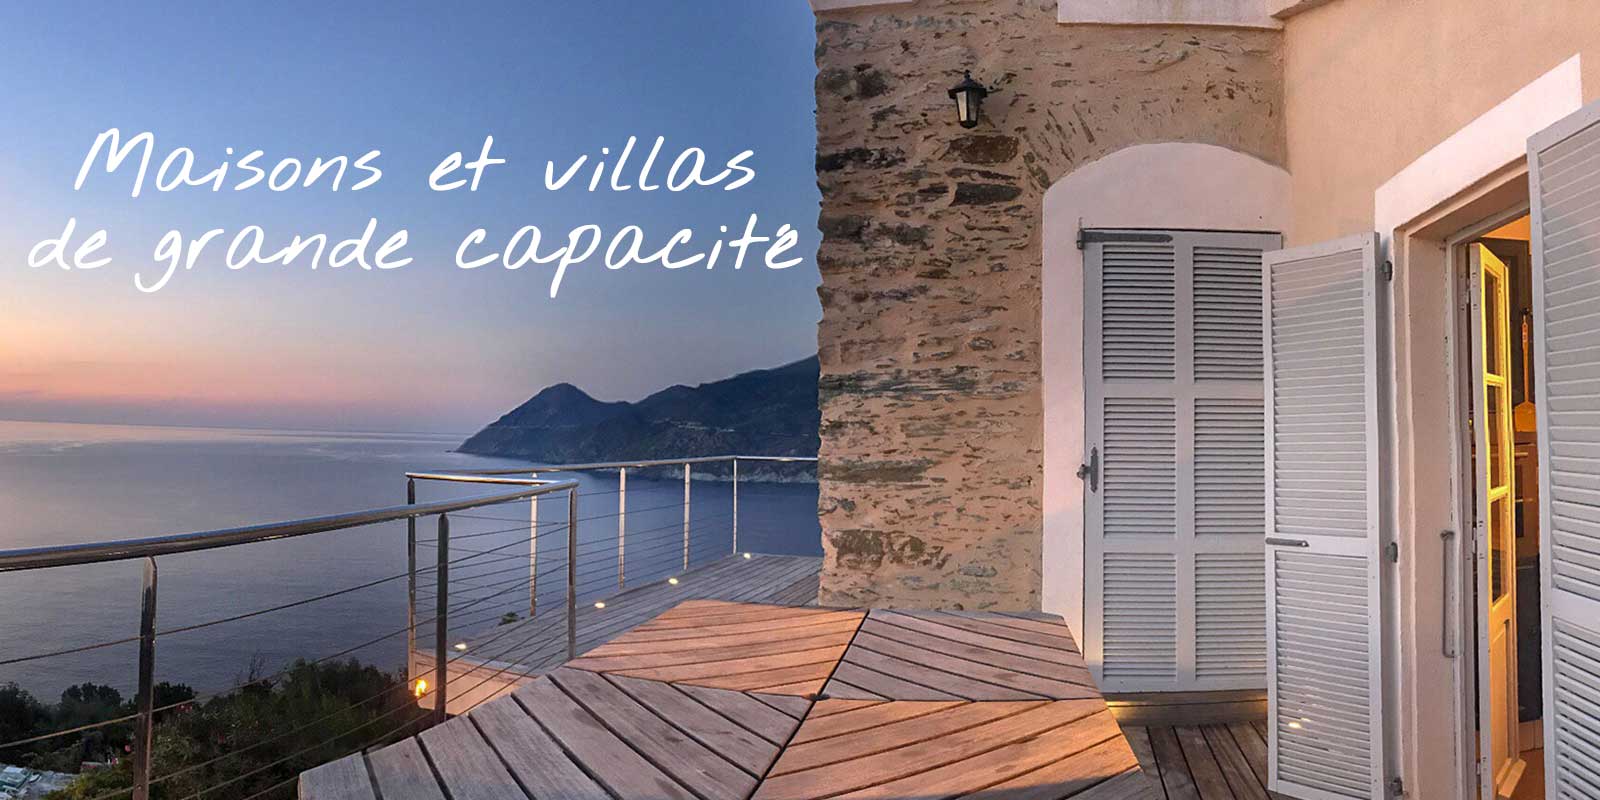 Location de vacances dans le Cap Corse pouvant accueillir plus de 8 voyageurs